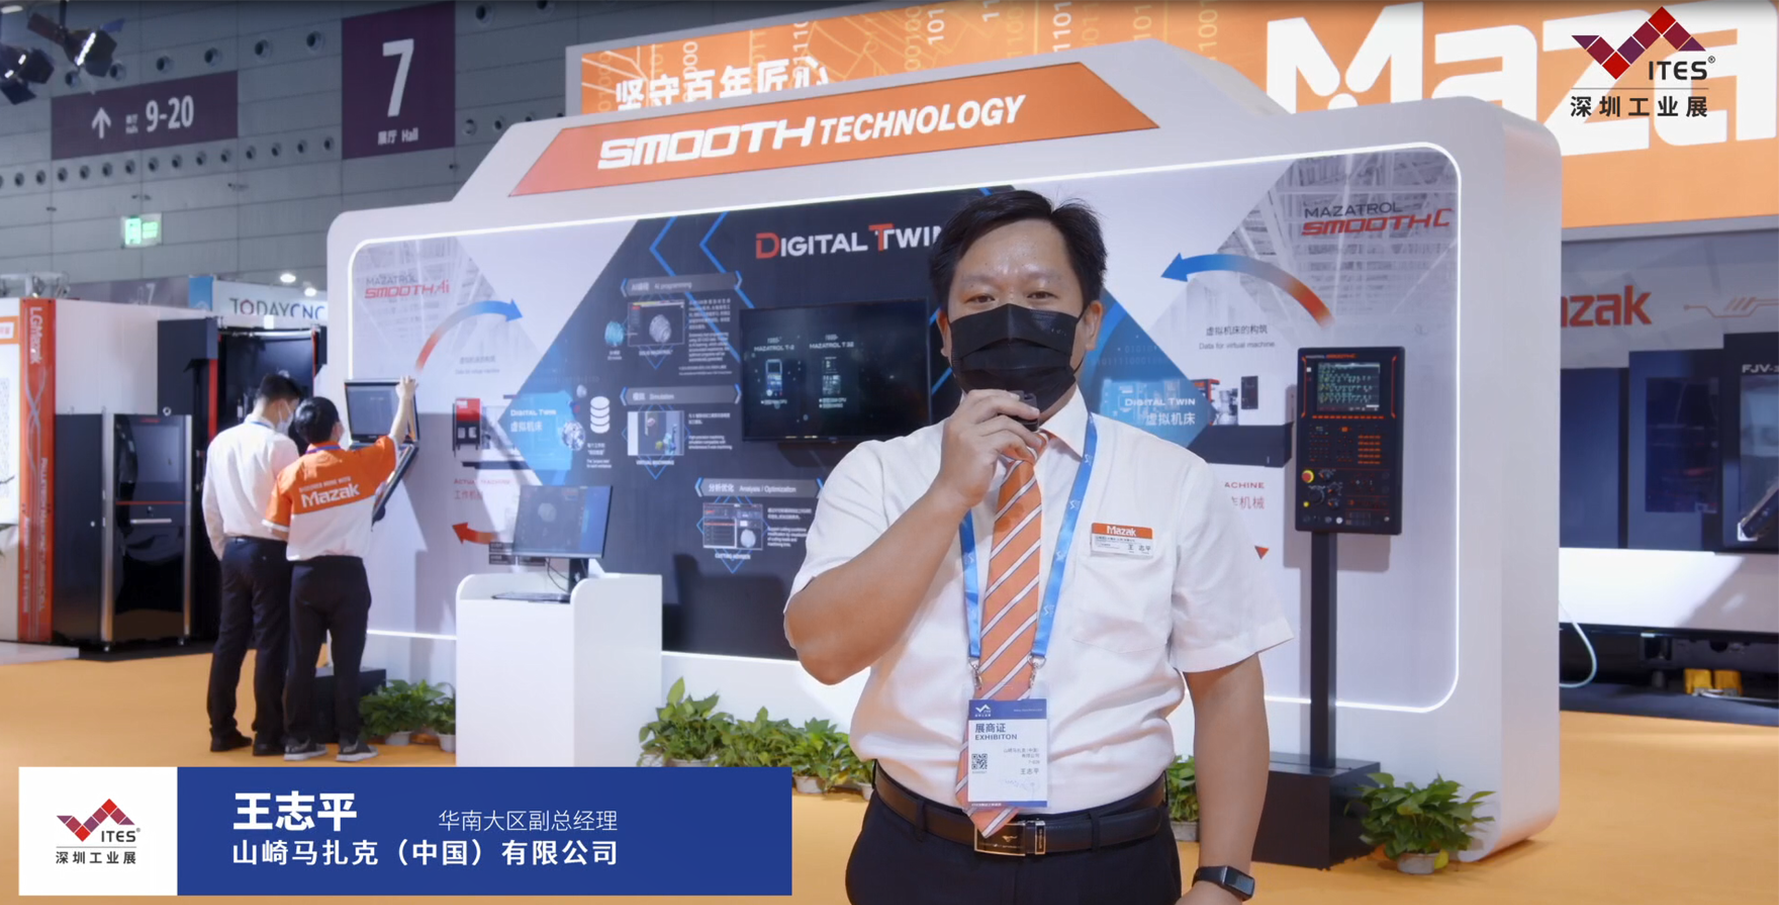 山崎马扎克在2022 ITES深圳工业展现场带来QTE-300L、VCE-430A L等设备，让我们一起洞悉工业技术新趋势。